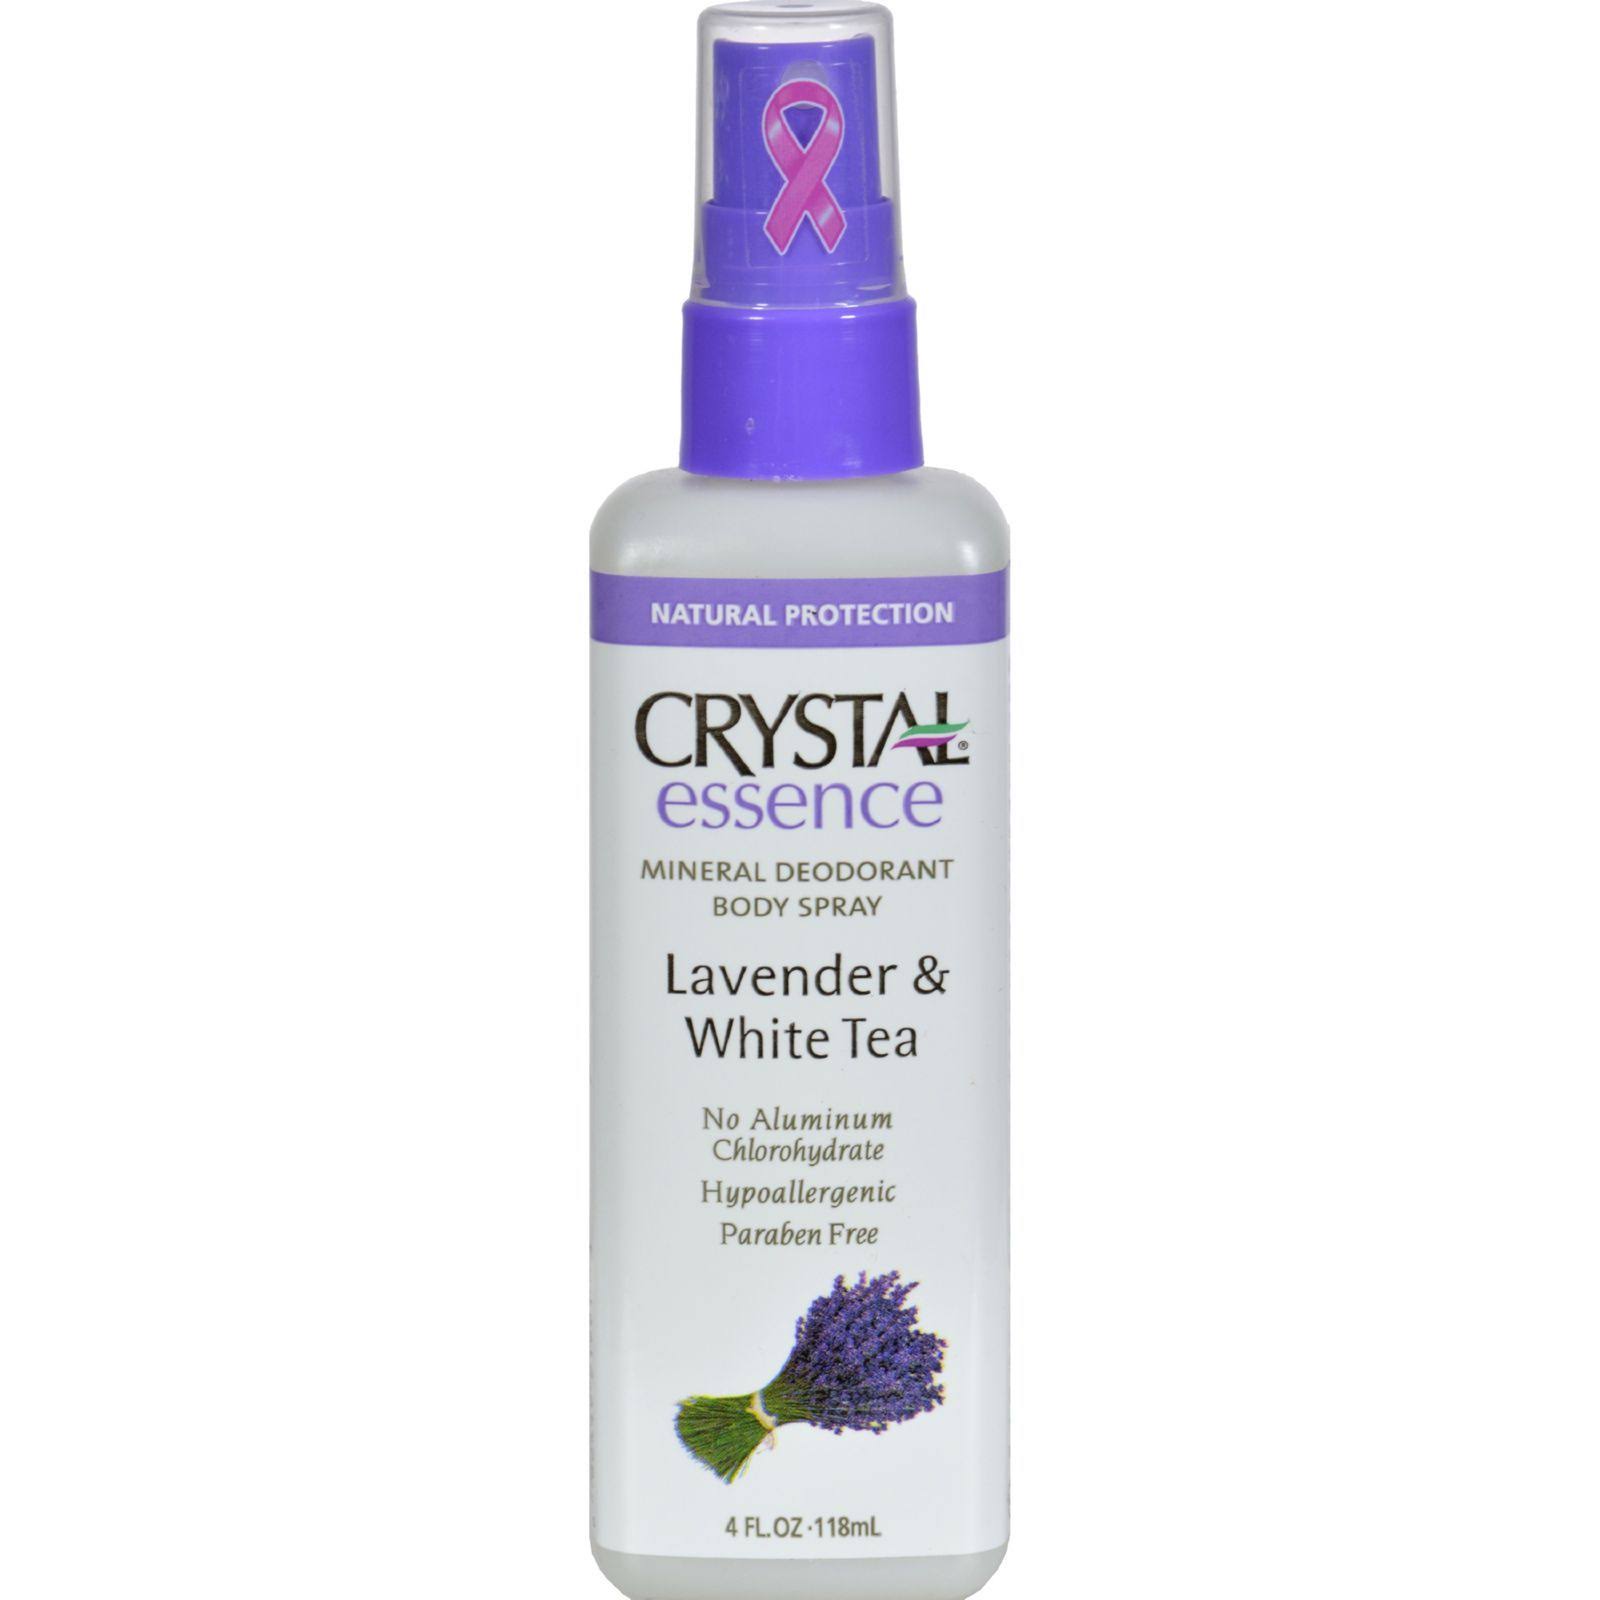 Crystal Essence Mineral Deodorant Body Spray - Lavender & White Tea, 4oz